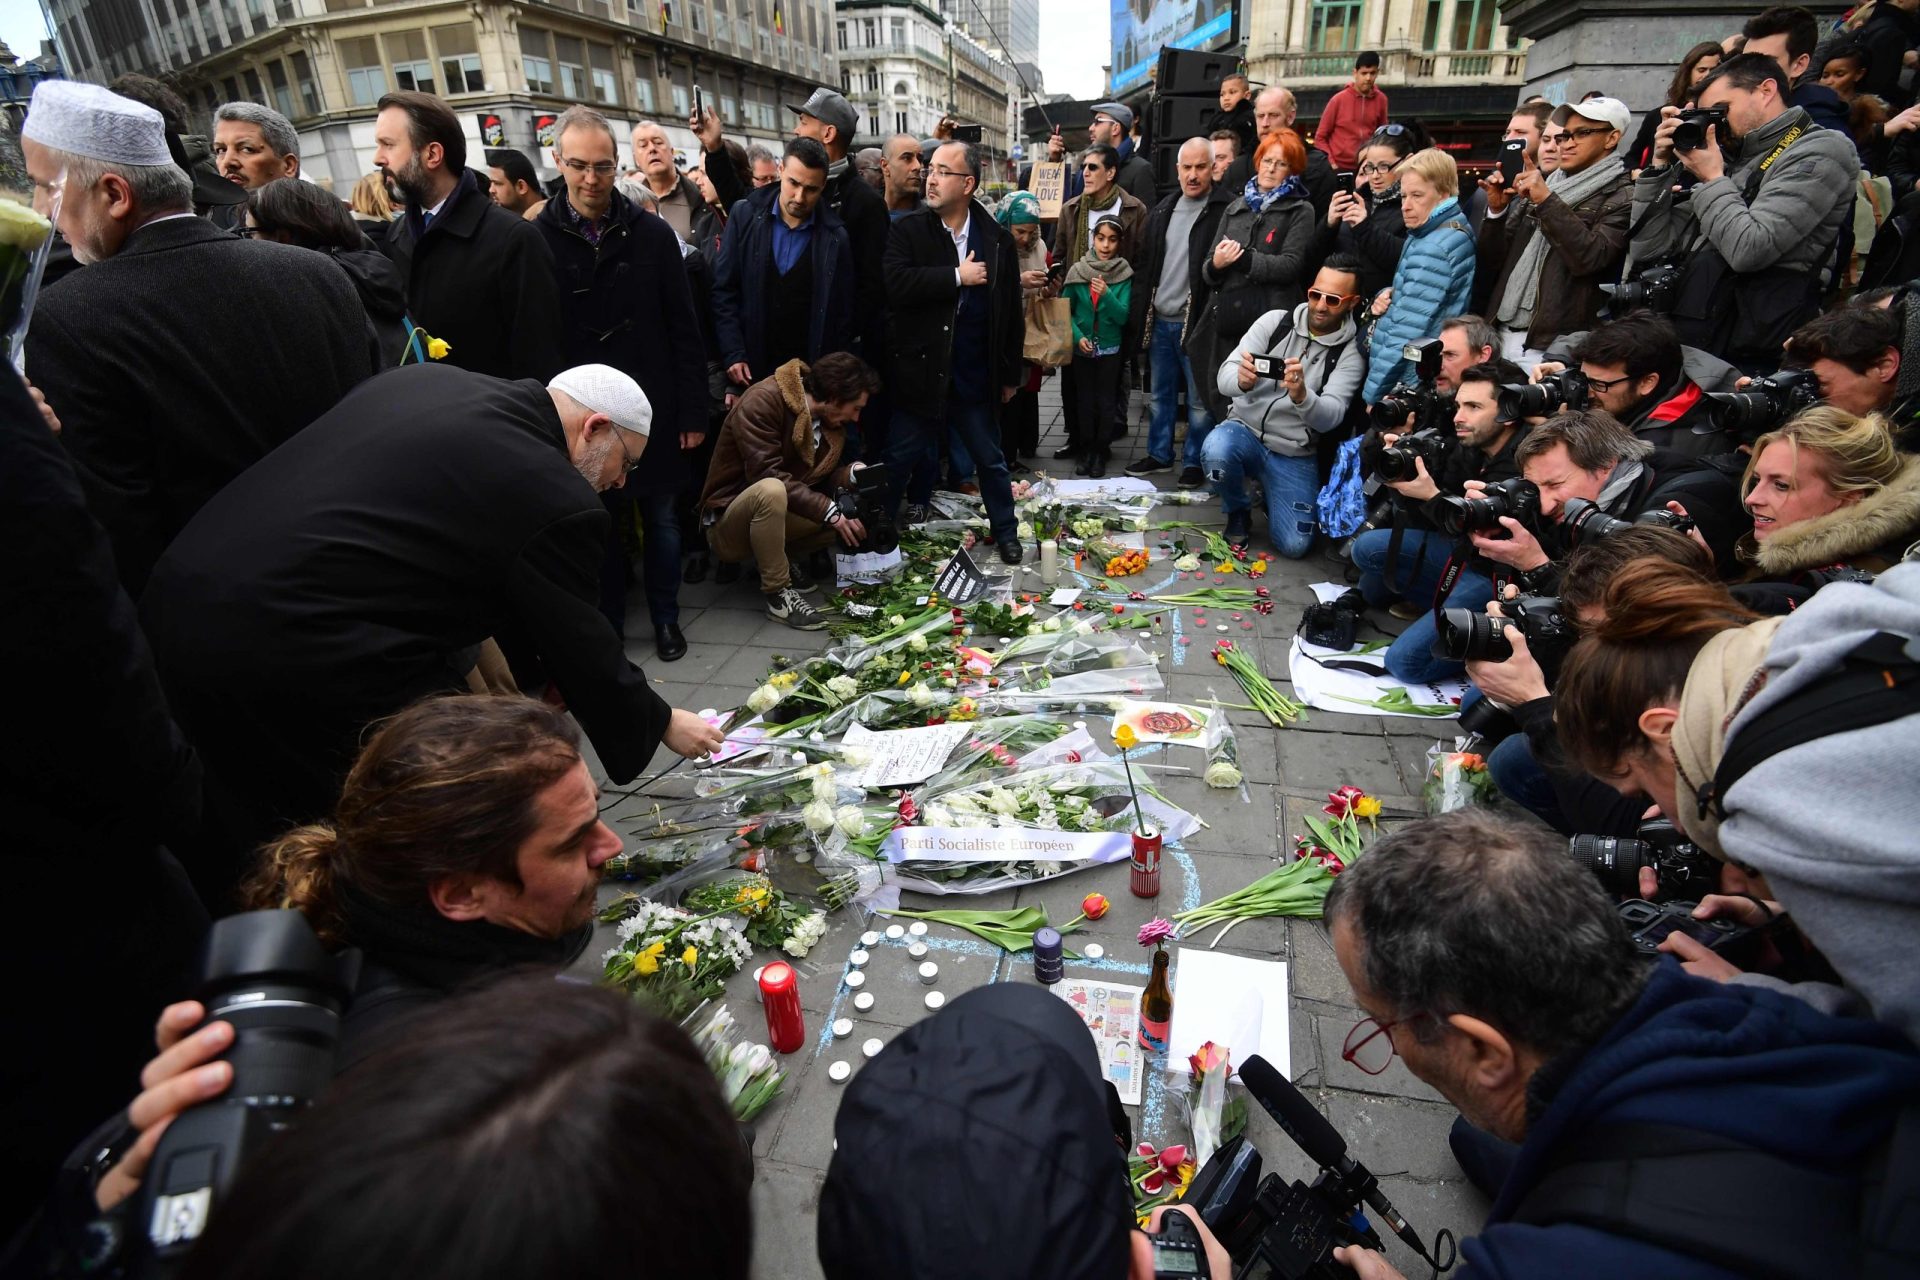 Bélgica. Bruxelas homenageia vítimas dos atentados terroristas [Fotogaleria]